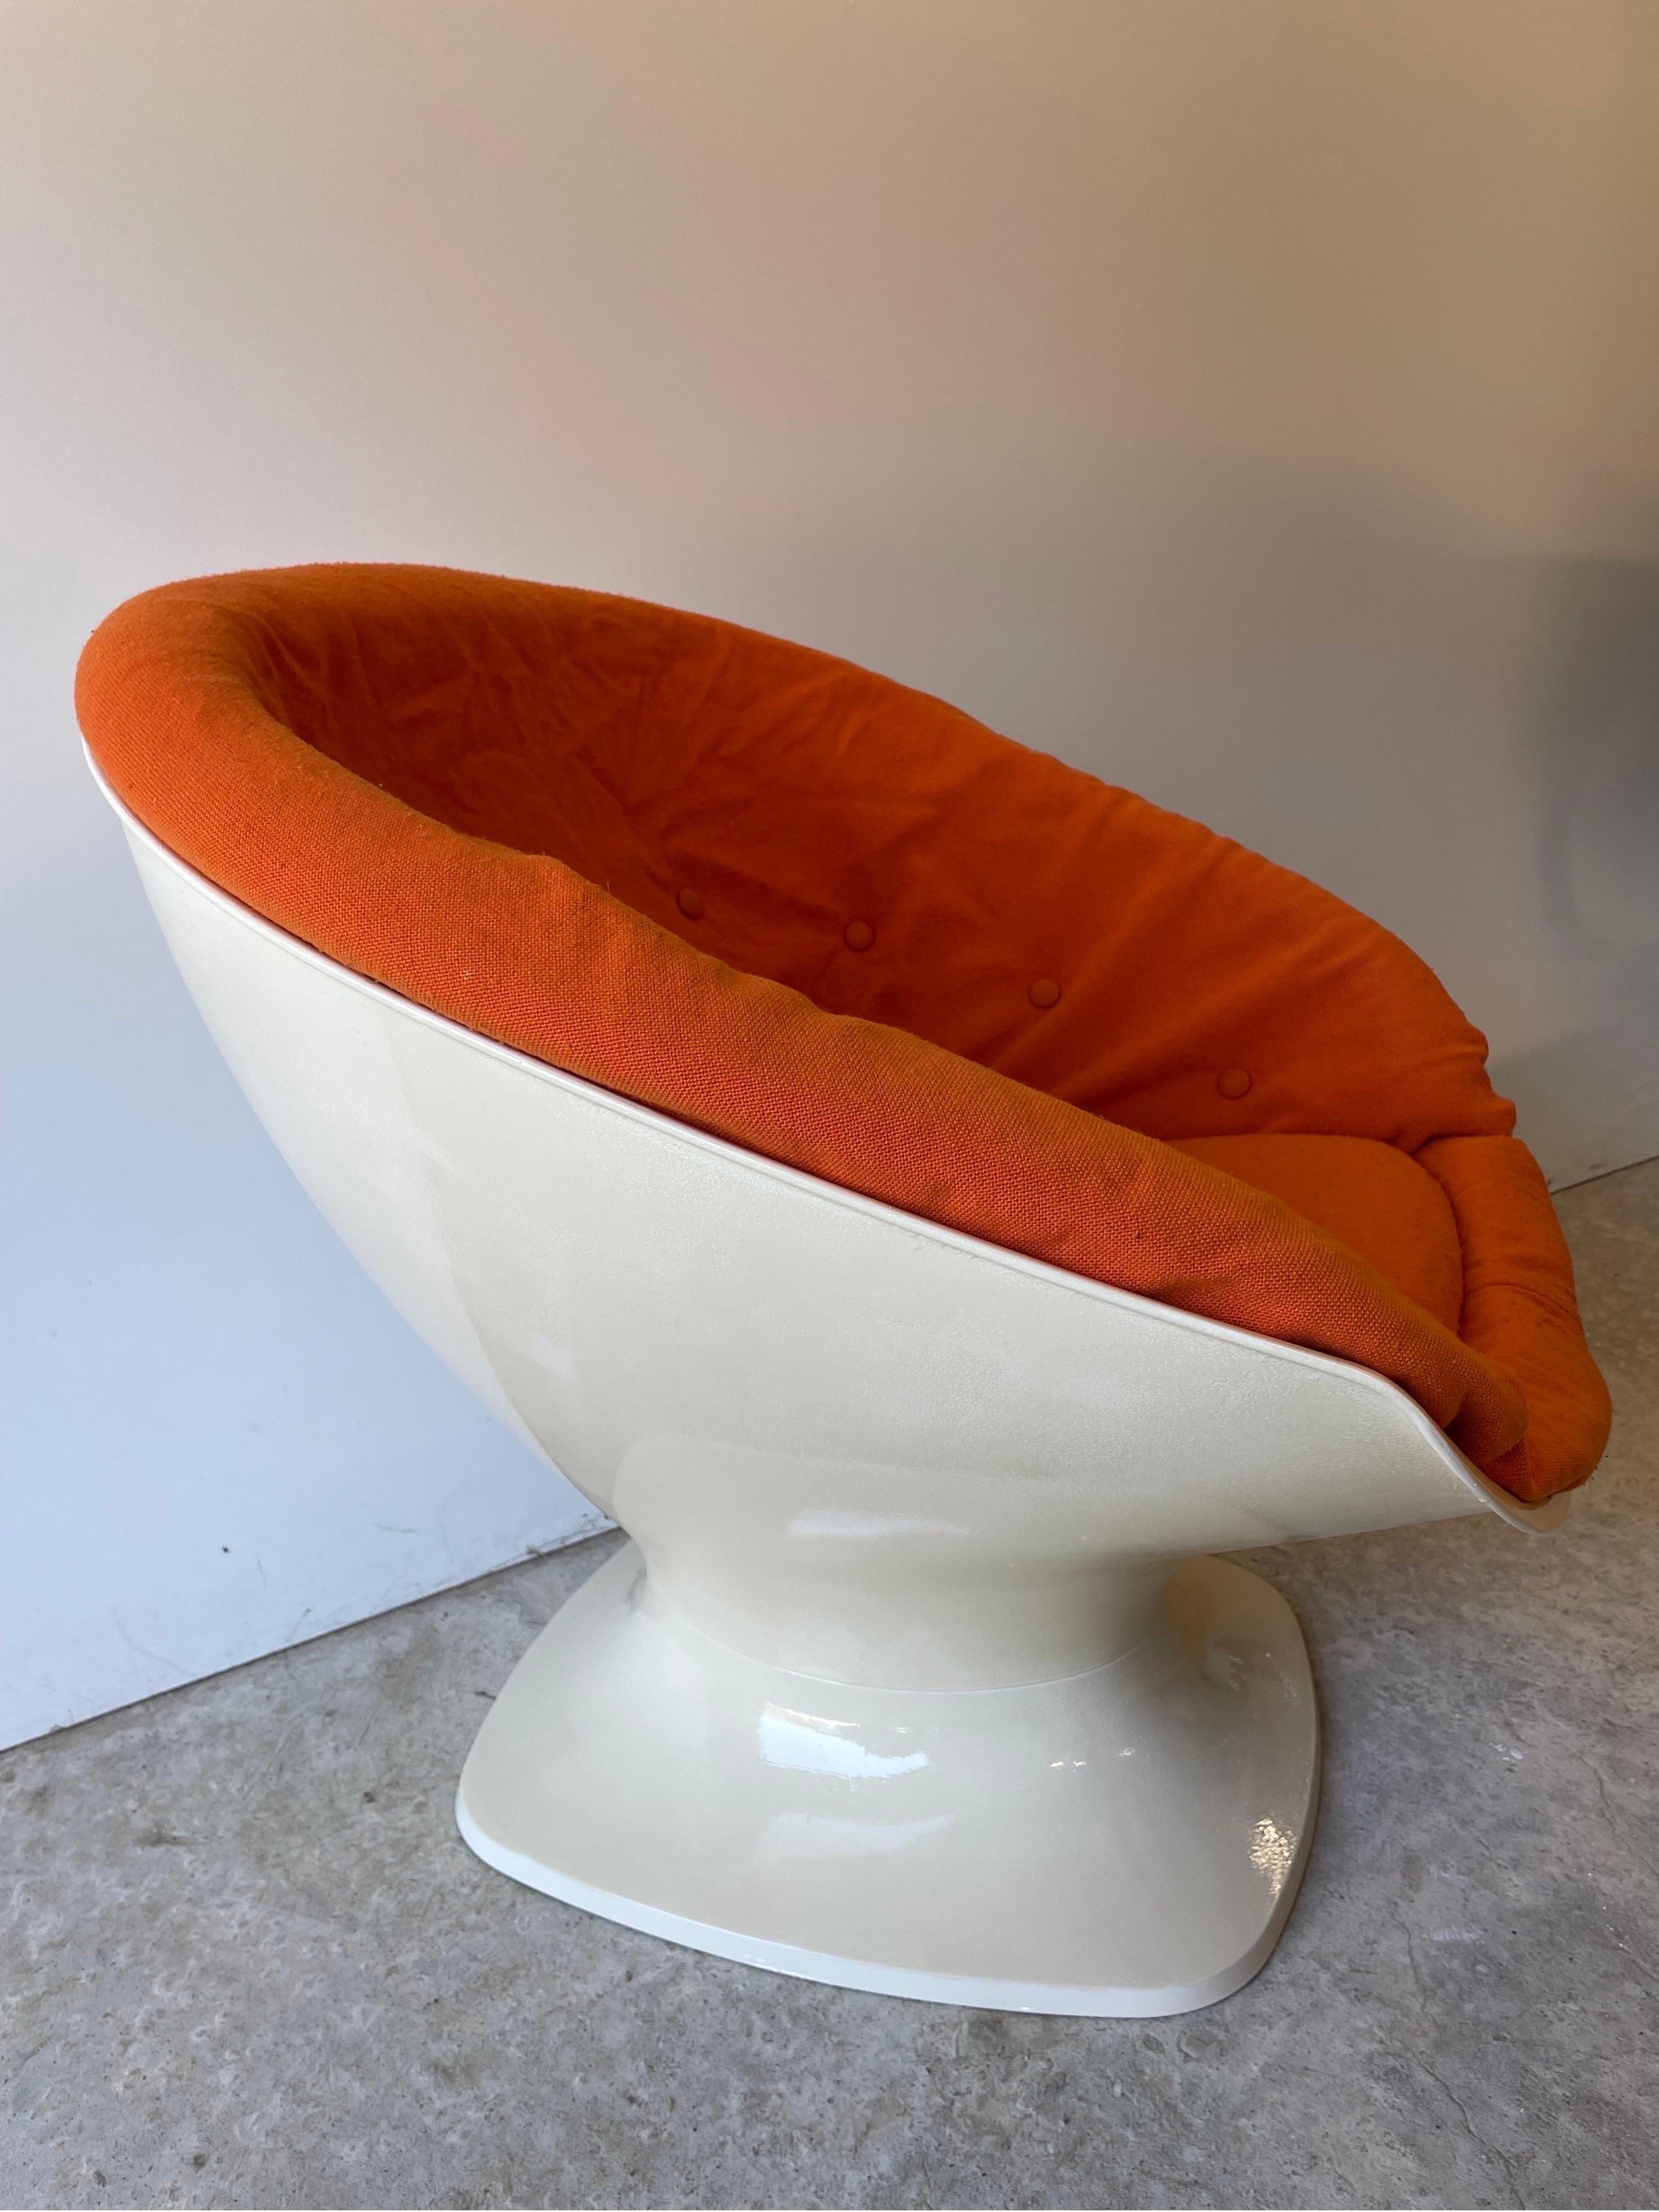 Ein Space-Age-Clubsessel aus der Jahrhundertmitte von Raphael Raffel, Frankreich 1965.

Der Klubsessel hat eine Tulpenform mit einer abgerundeten Sitzfläche, die mit dem originalen orangenen Stoffbezug versehen ist. Der Sessel ist äußerst selten